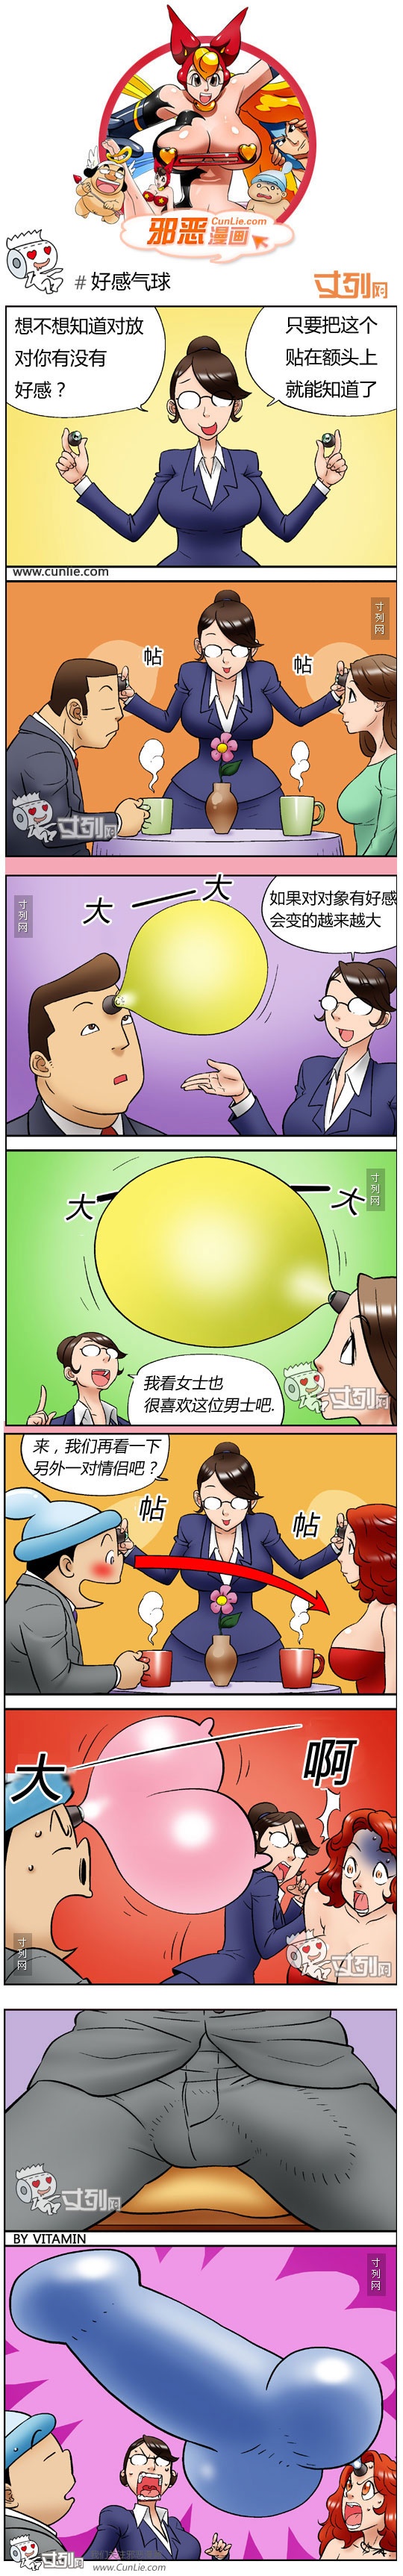 邪恶韩国成人漫画之好感气球